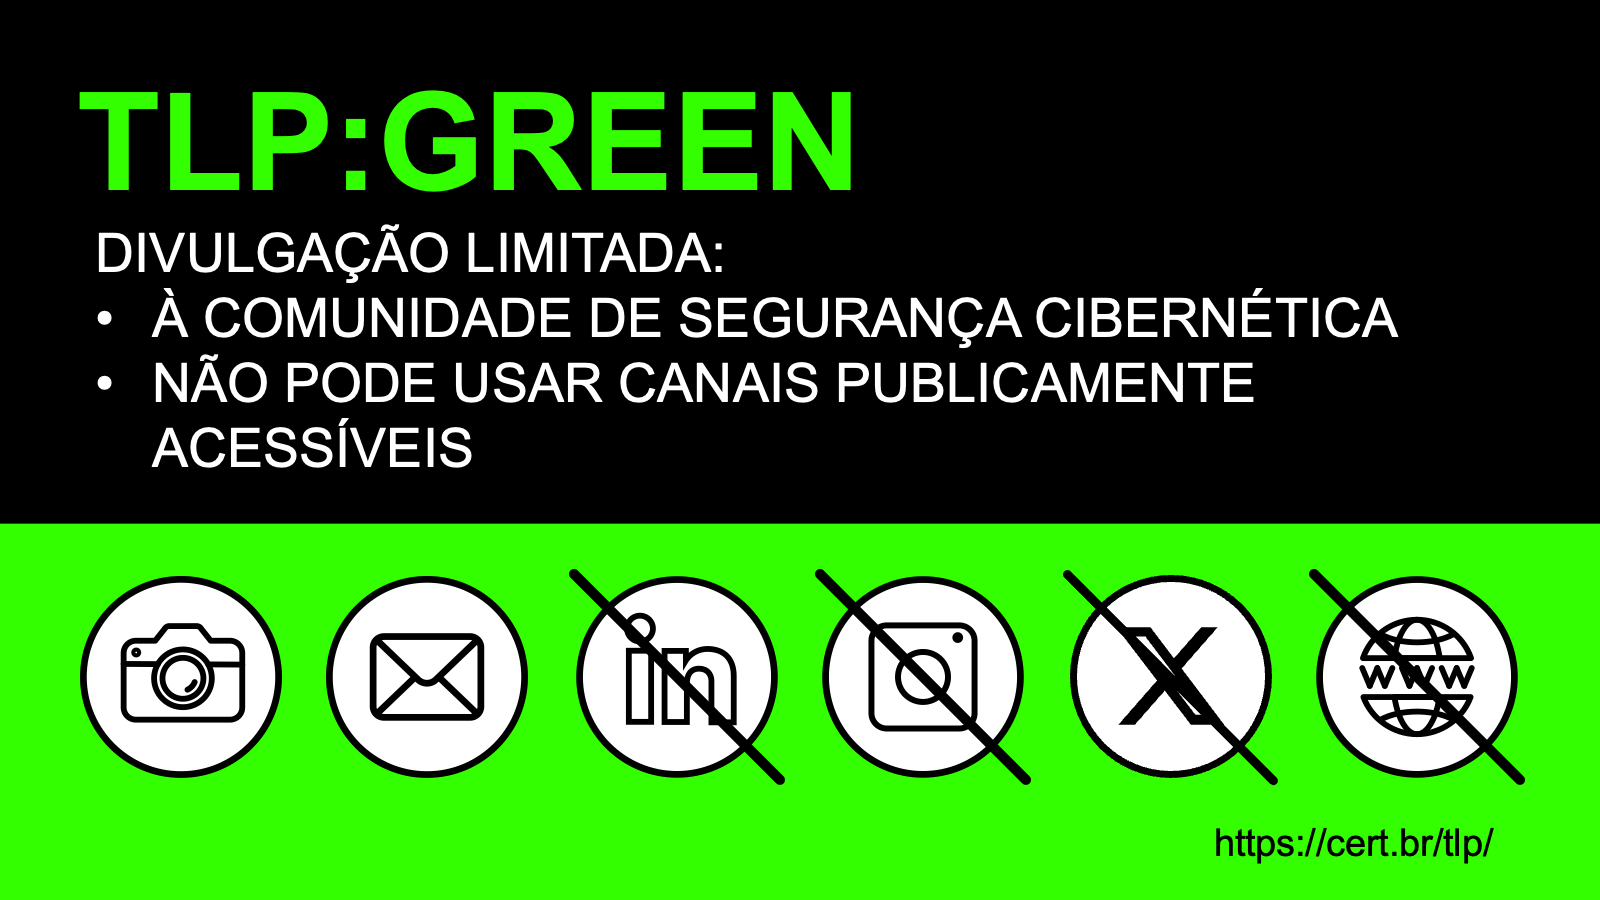 regras tlp green